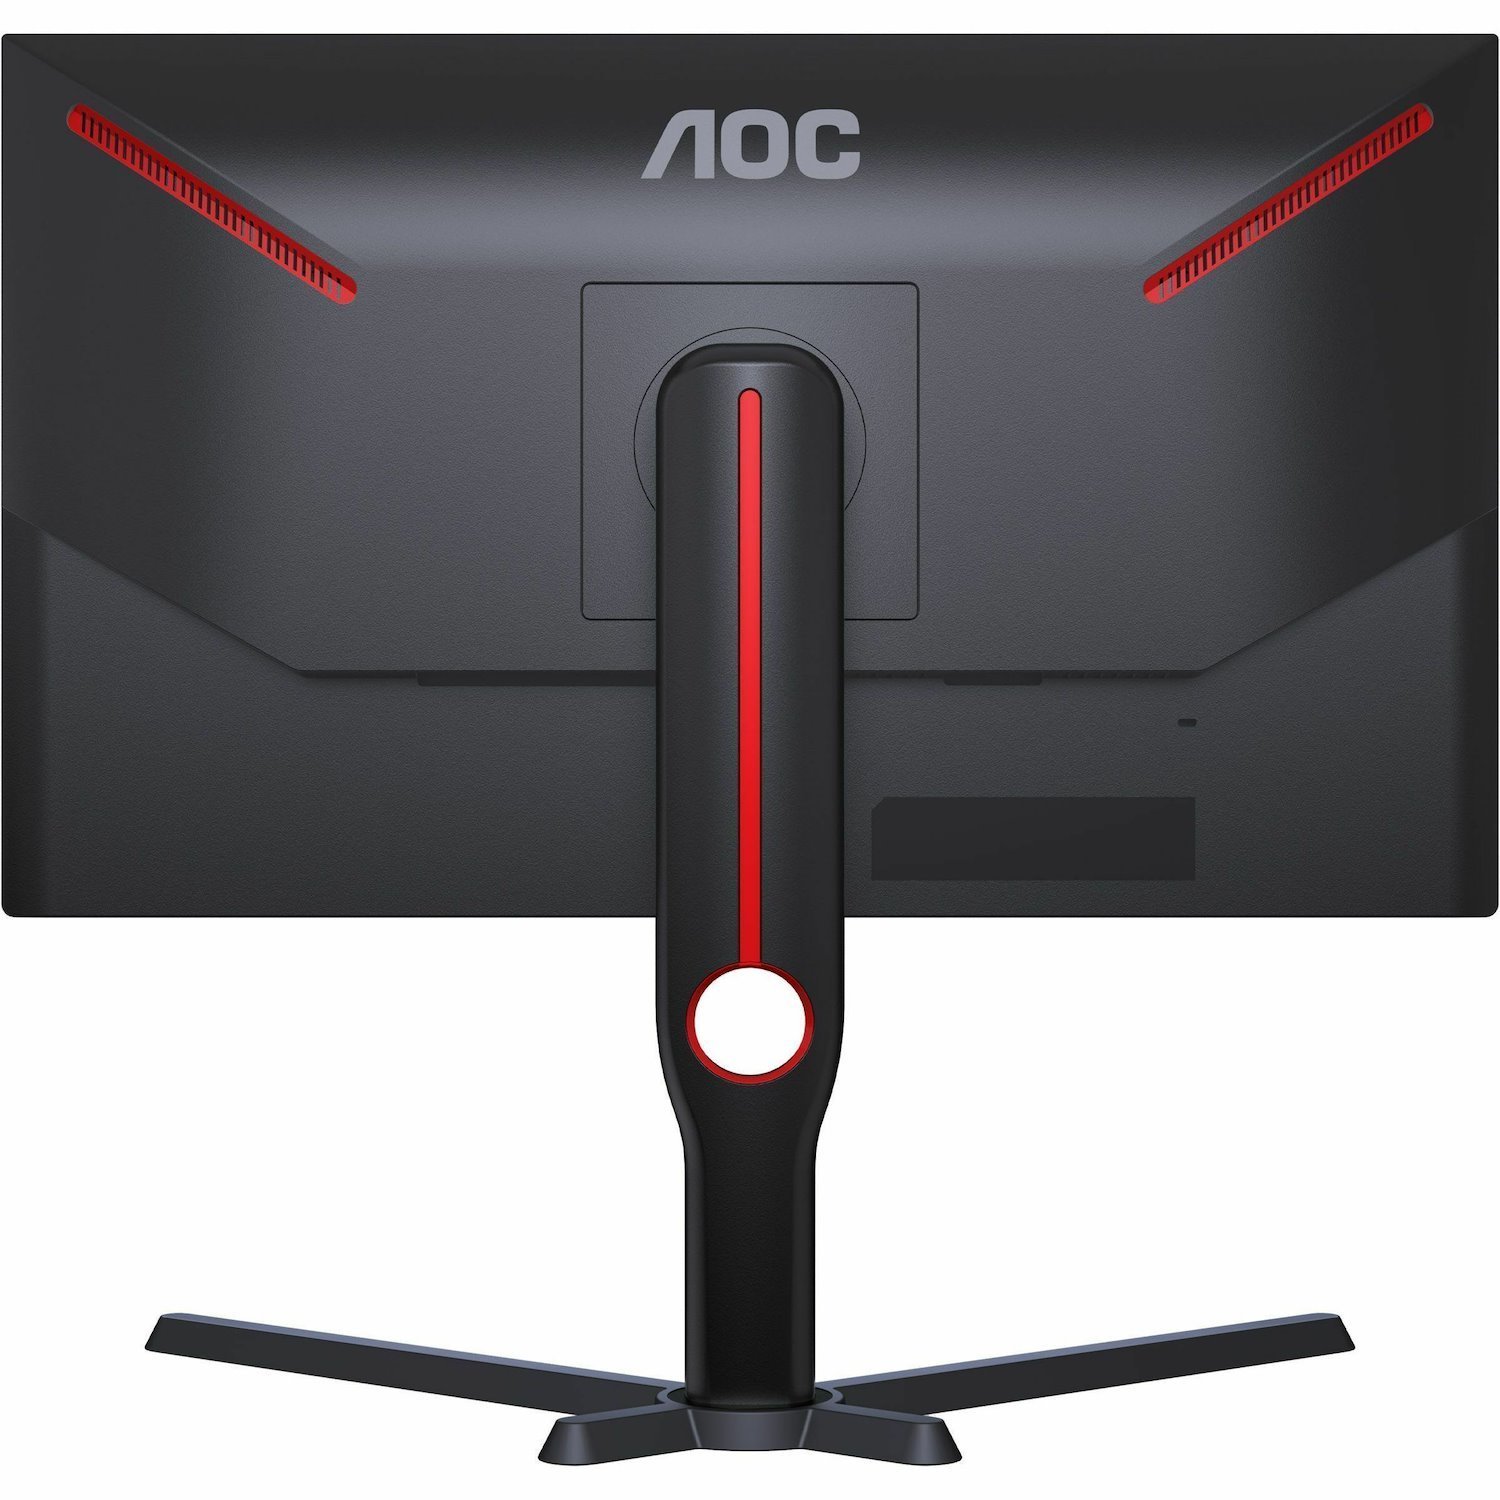 AOC 25G3ZM 25" Class Full HD Gaming LCD Monitor - Black, Red